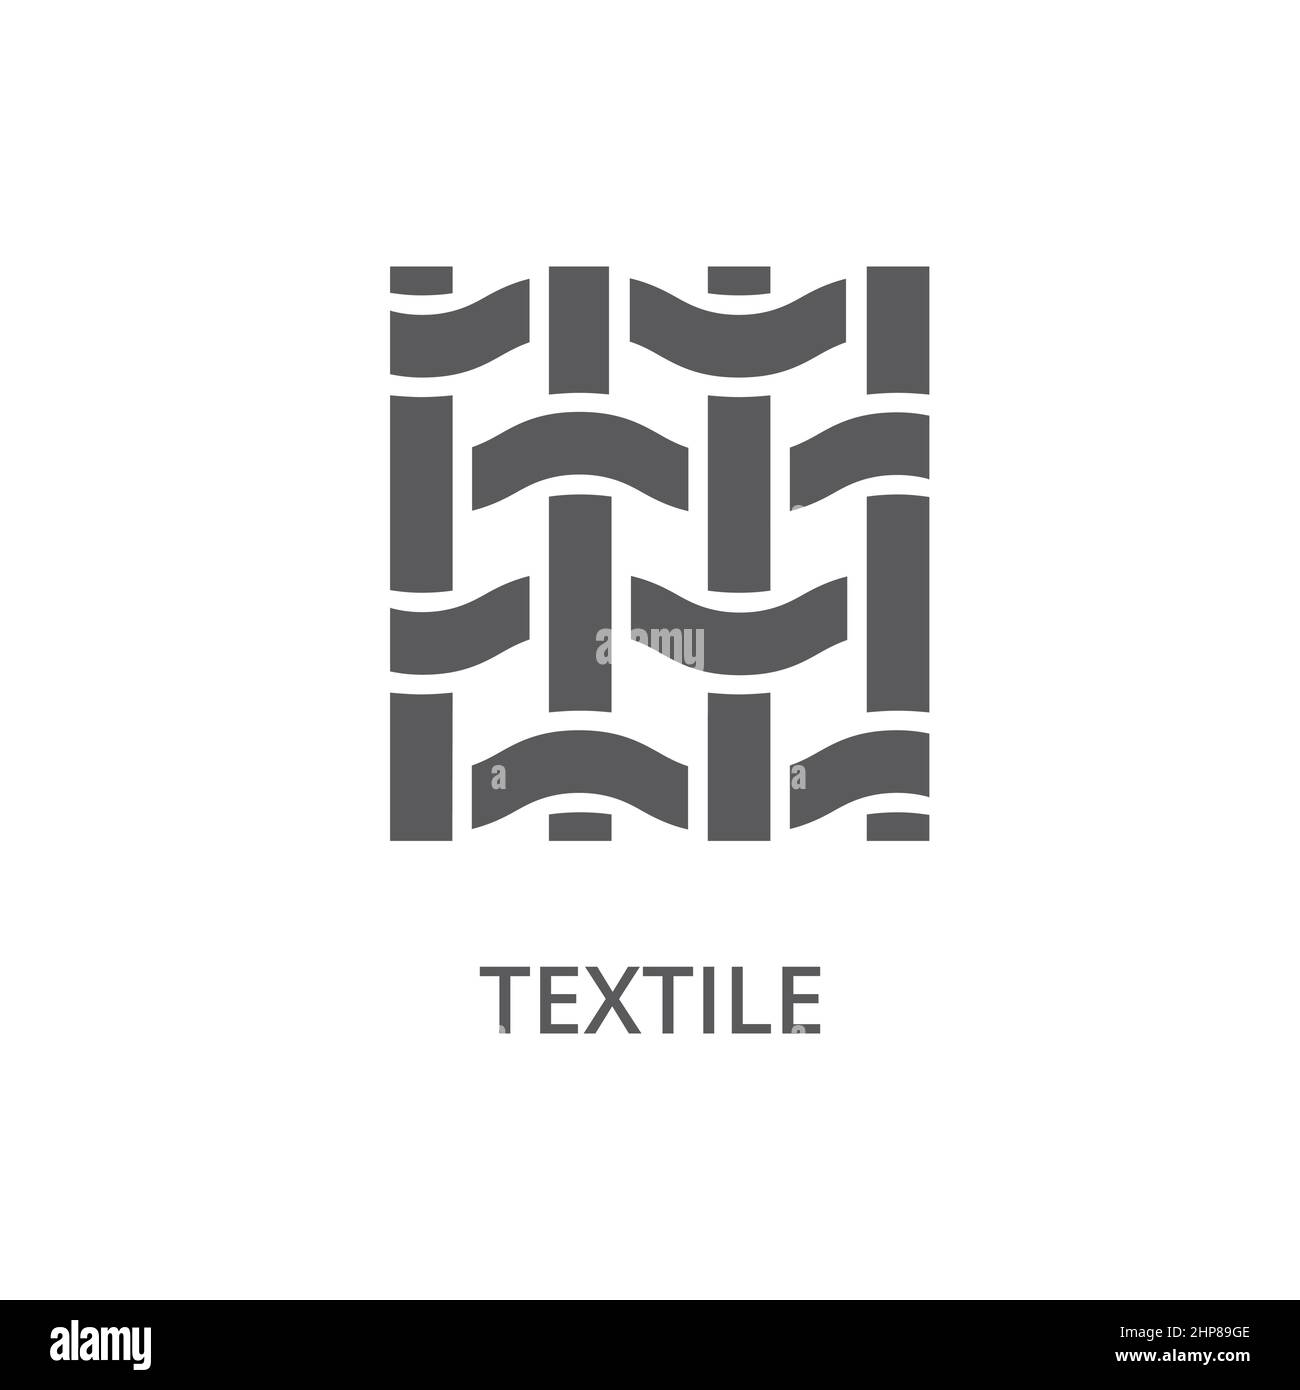 Le tissu textile est orné d'une icône vectorielle Illustration de Vecteur